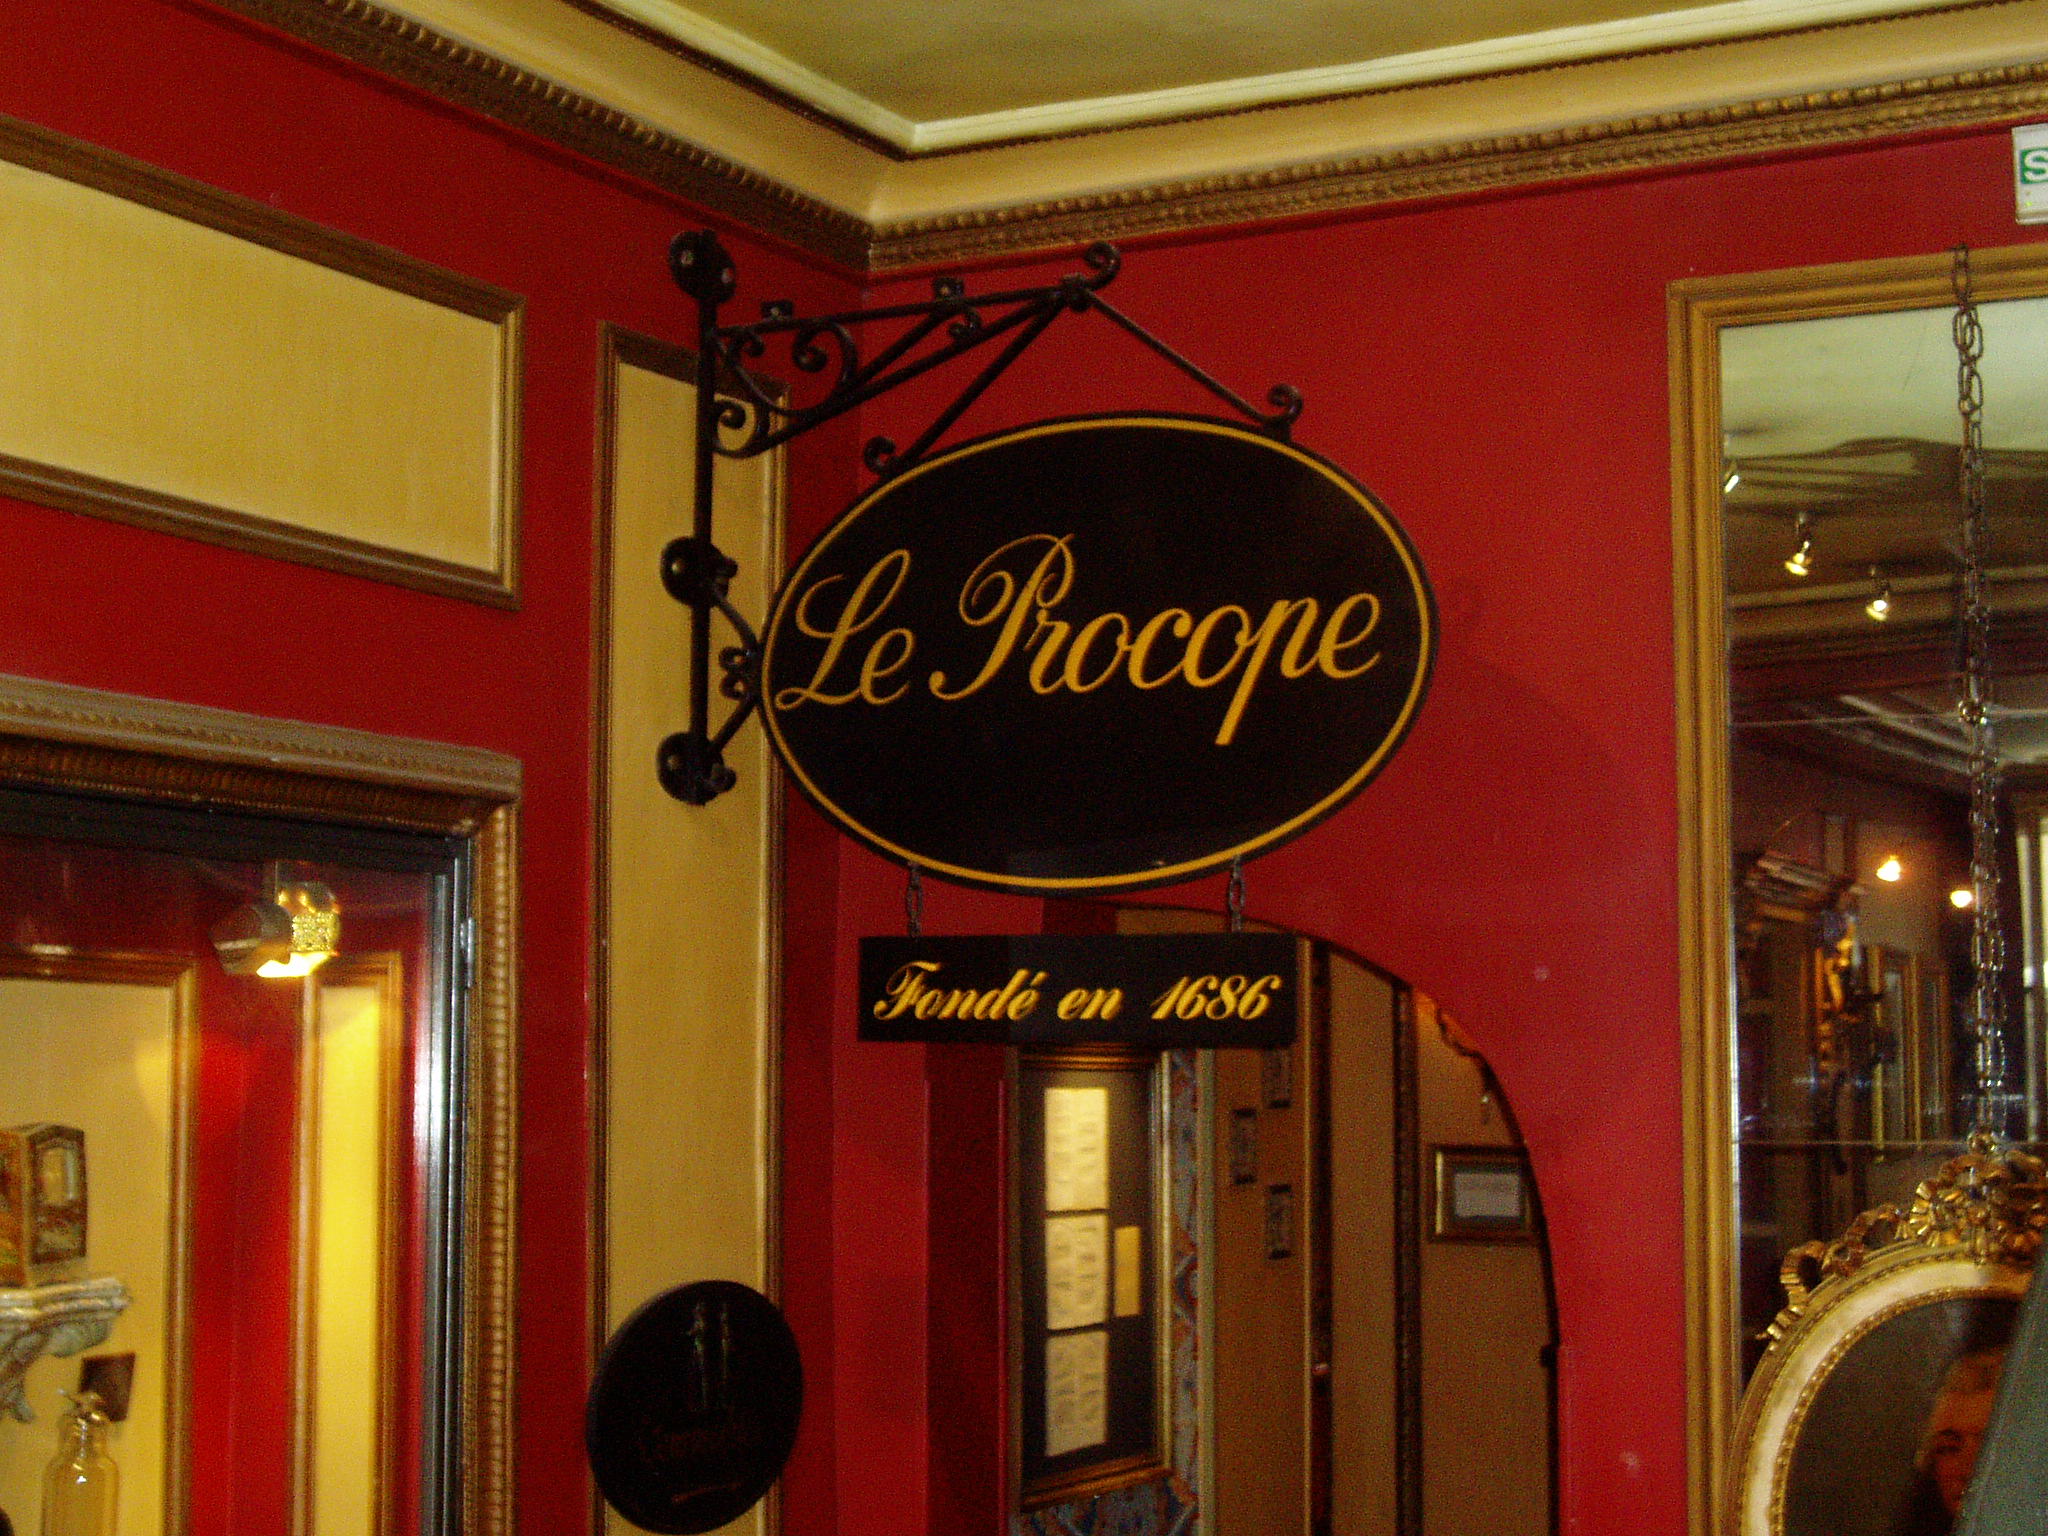 Название ресторанов на английском. Procope ресторан Париж. Ресторан Прокоп в Париже. Le Procope ресторан в Париже. Французские названия ресторанов.